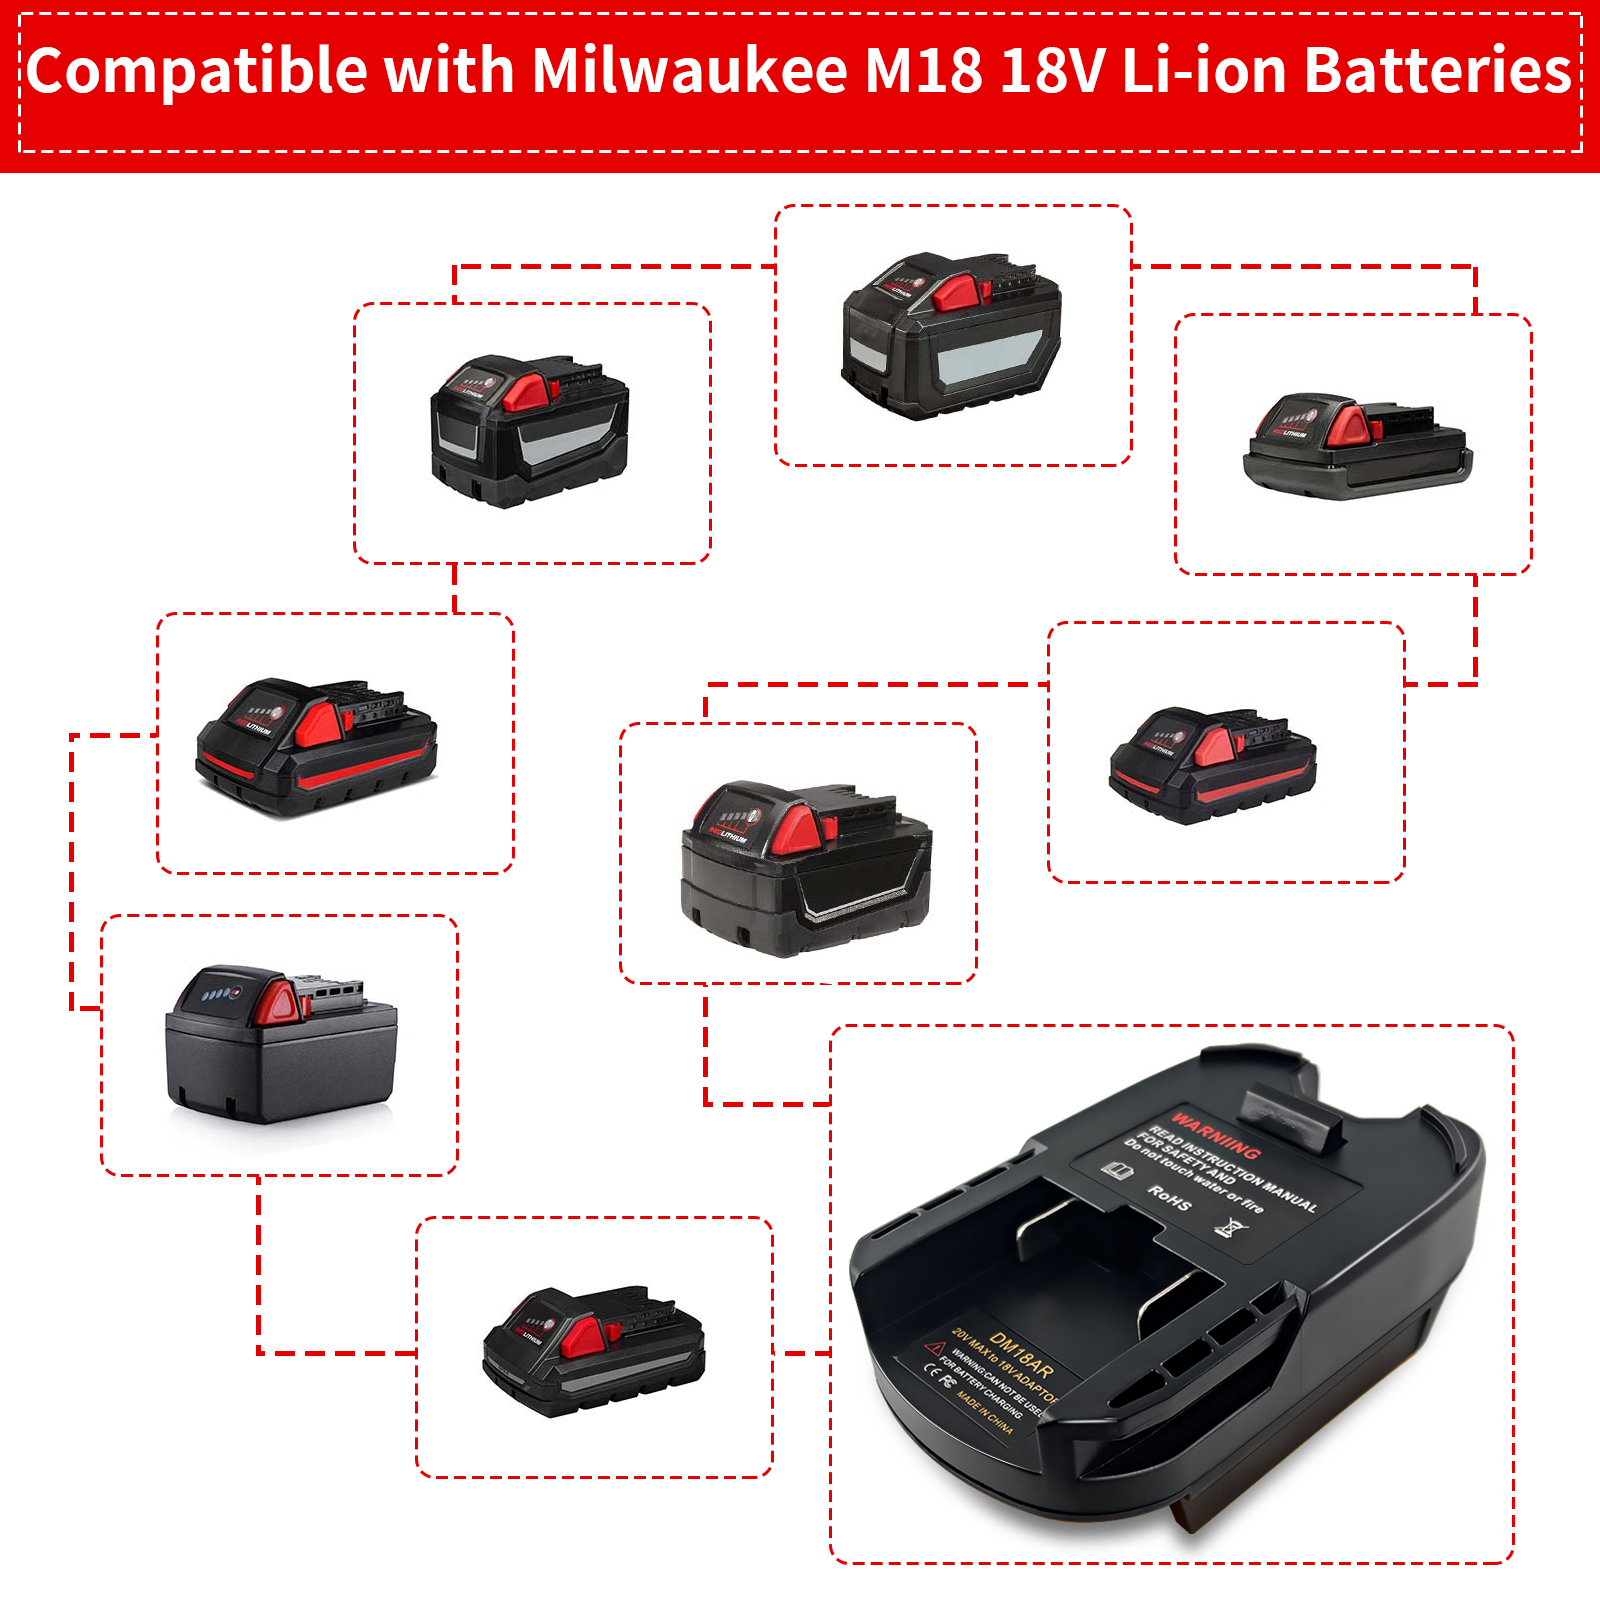 Akumulatora adapteris pārveidojiet Milwaukee 18V M18 un Dewalt 20V akumulatorus par Ridgid AEG bezvadu instrumentiem